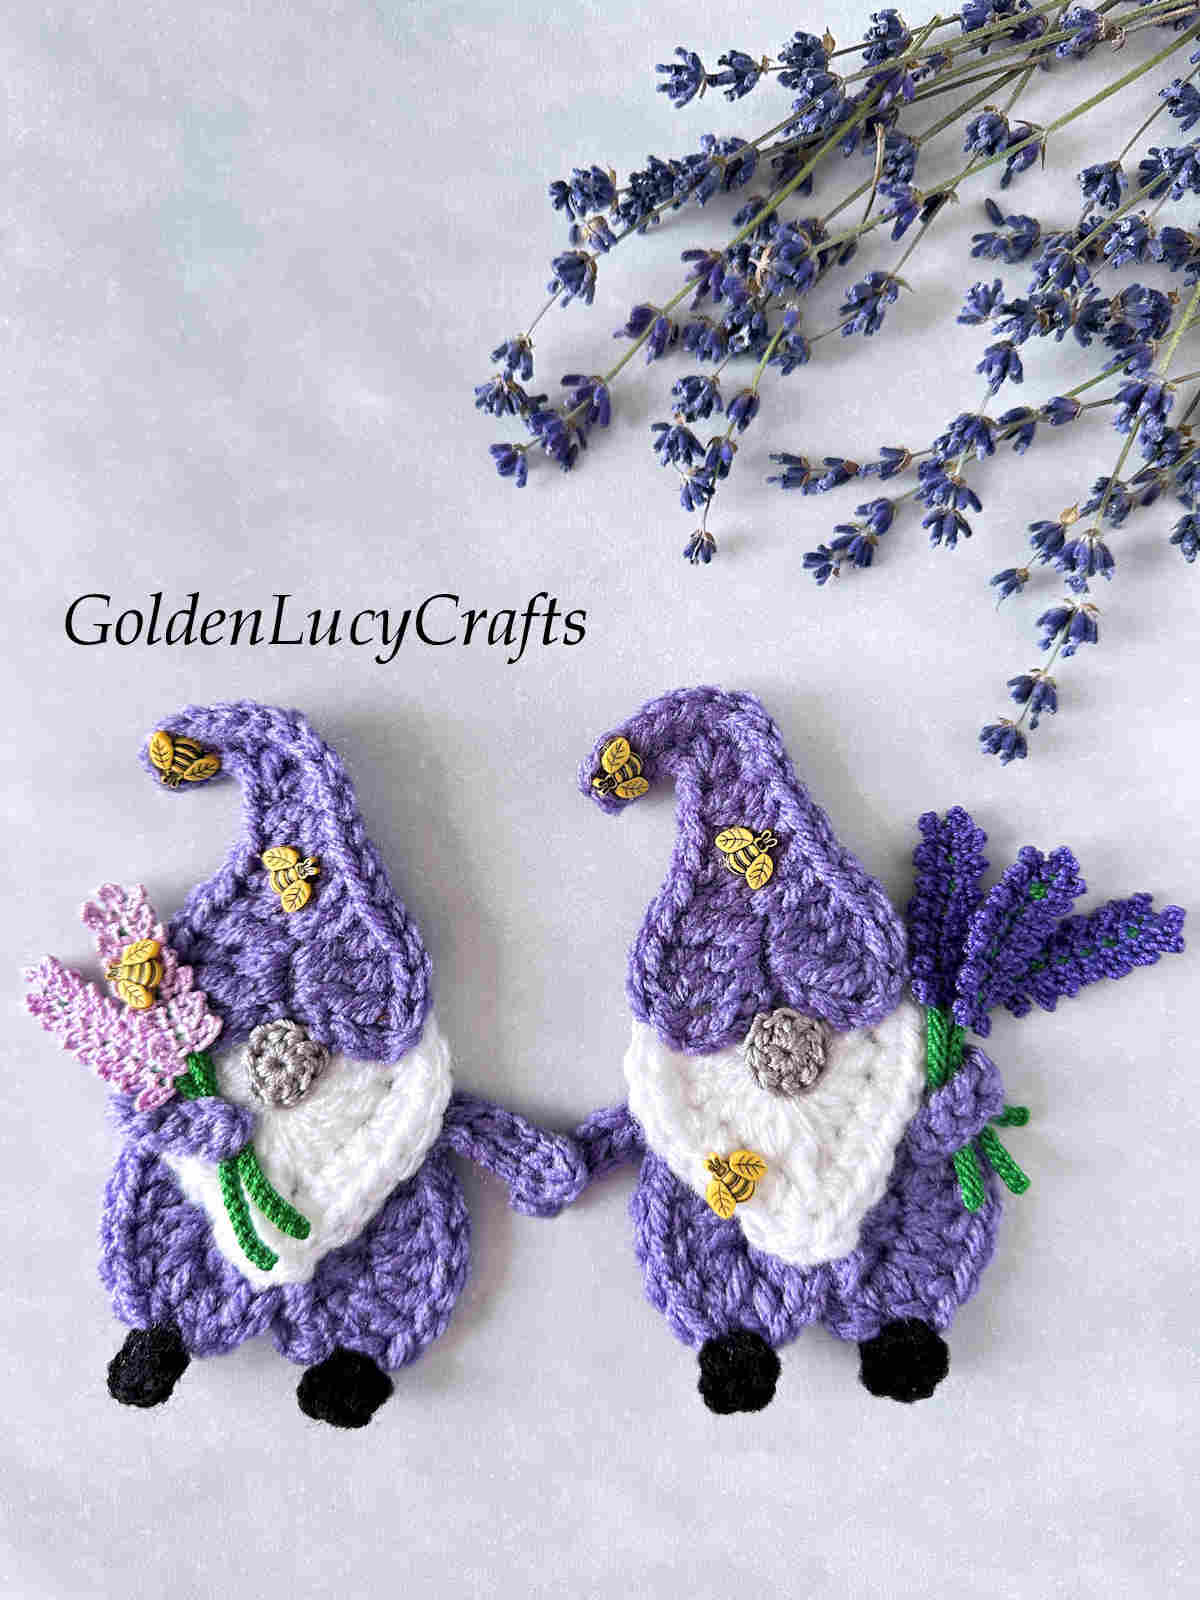 Two lavender gnomes crochet appliques.